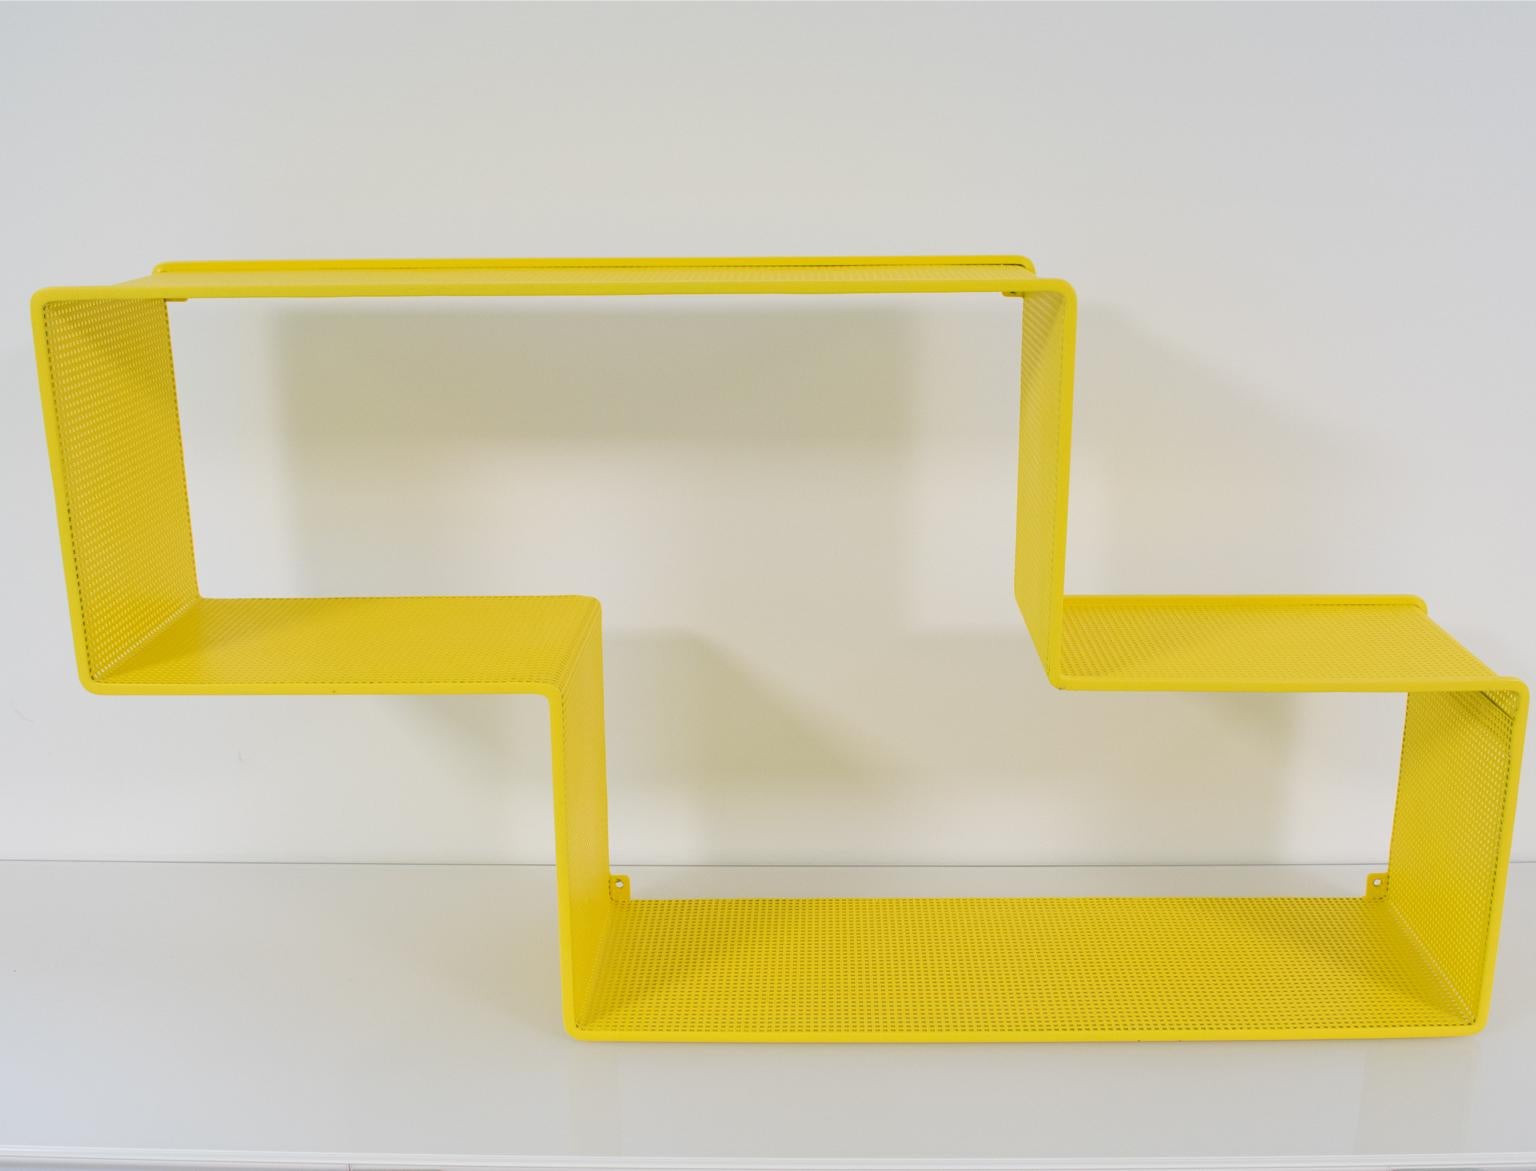 Mid-Century Modern Mathieu Mategot Yellow Metal Dedal Wall Book Shelf